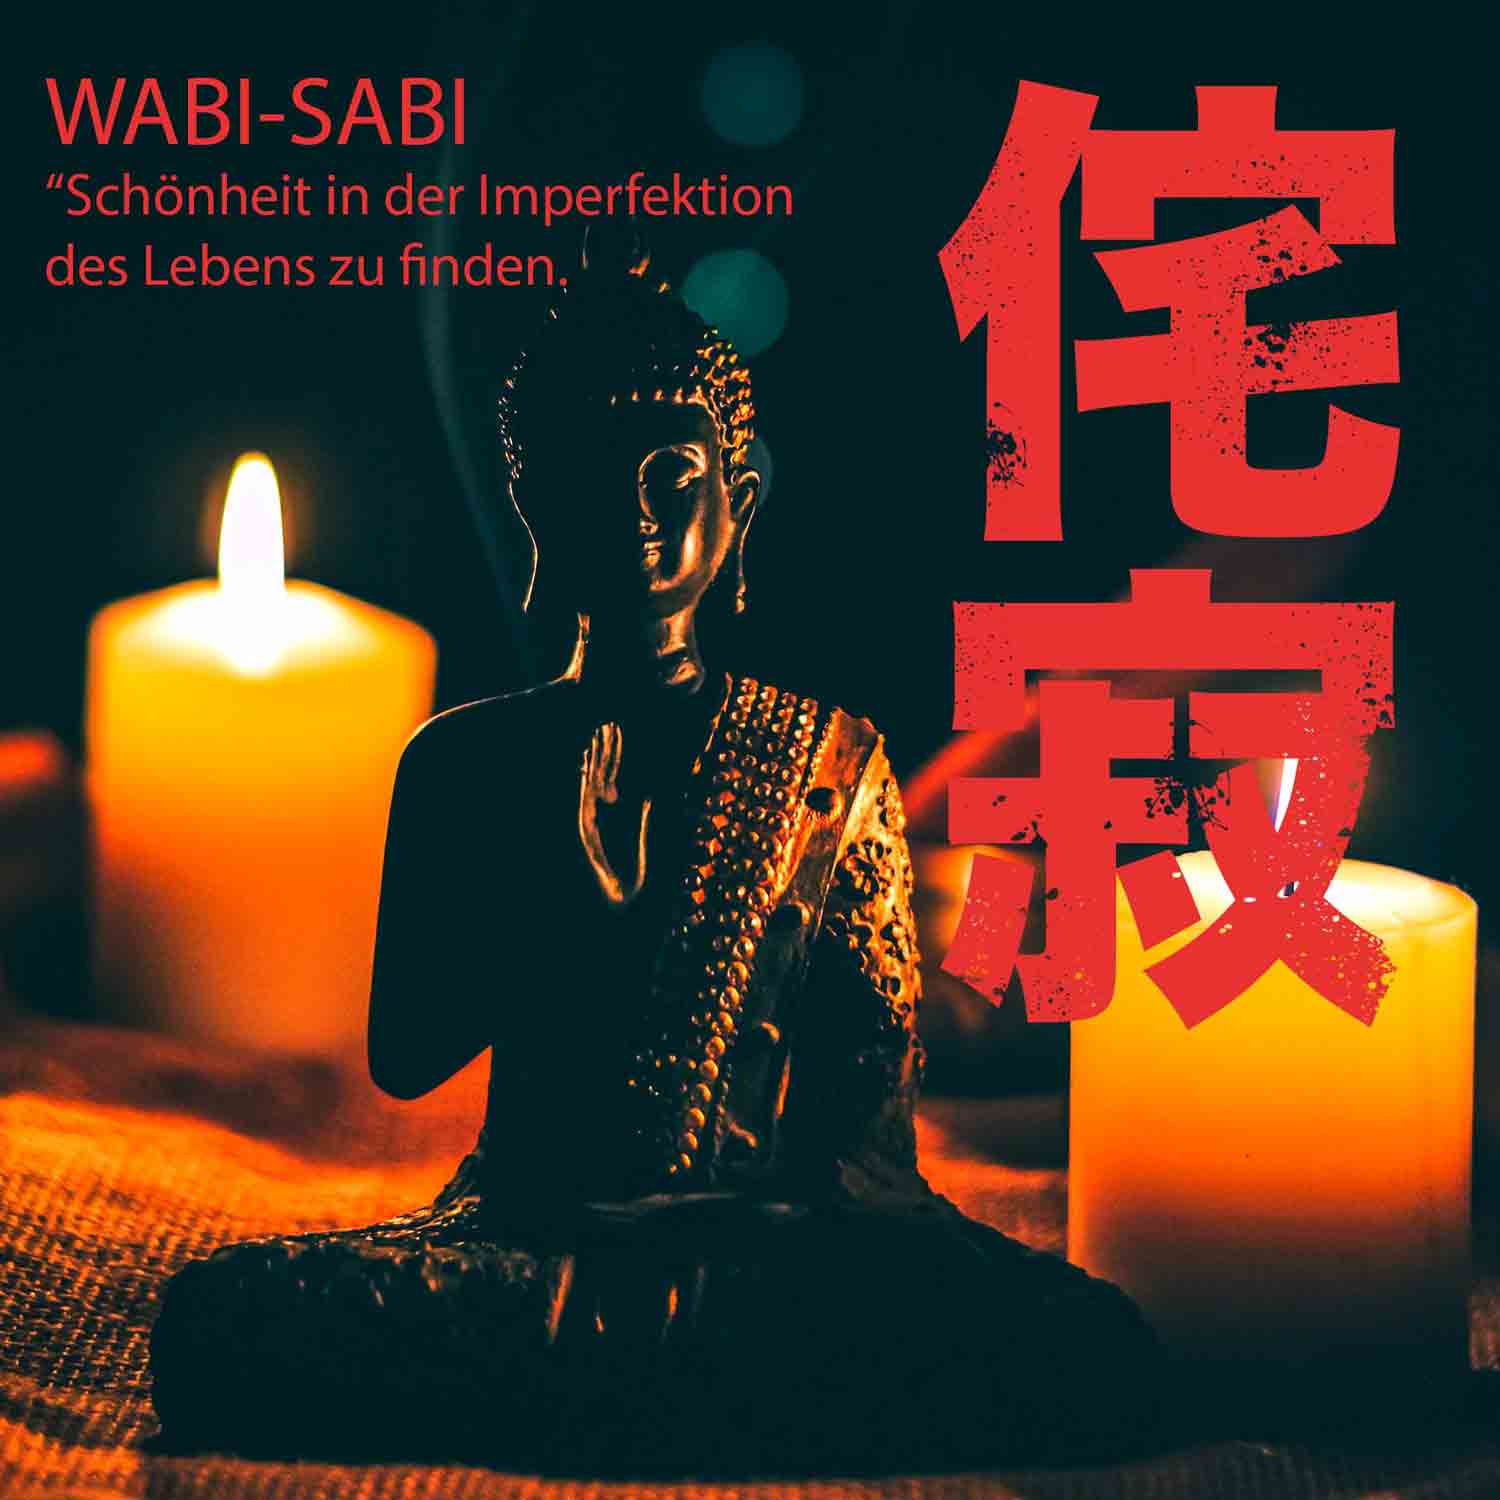 WABI SABI - Japanisches Notizbuch mit Siebdruck